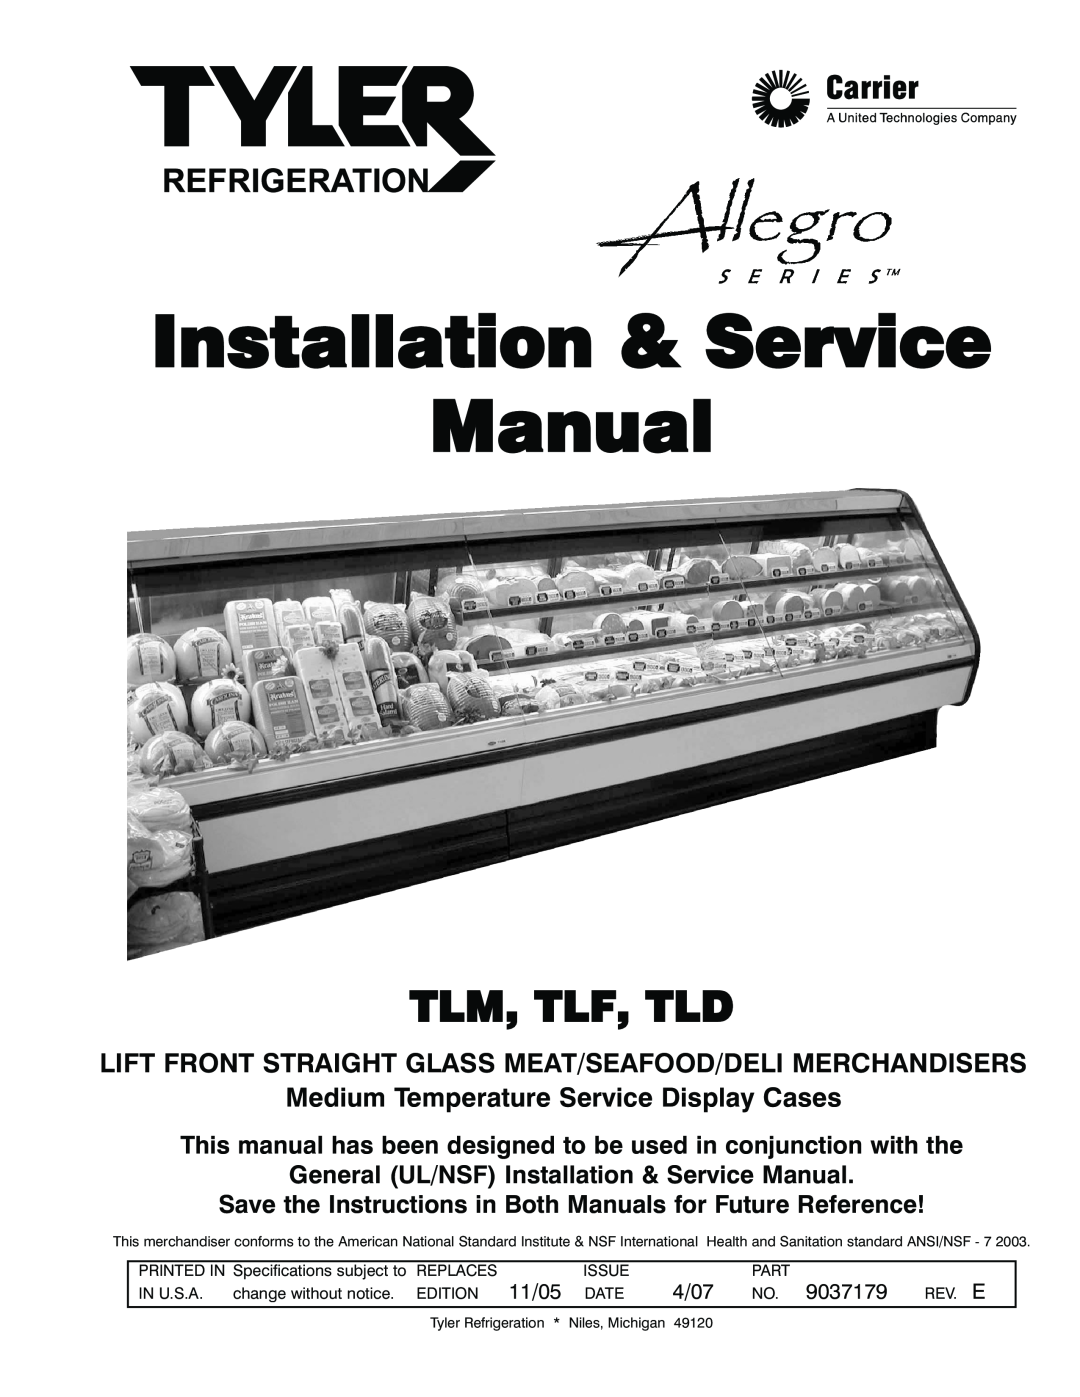 Tyler Refrigeration TLD, TLF, TLM service manual Tlm, Tlf, Tld, Medium Temperature Service Display Cases 